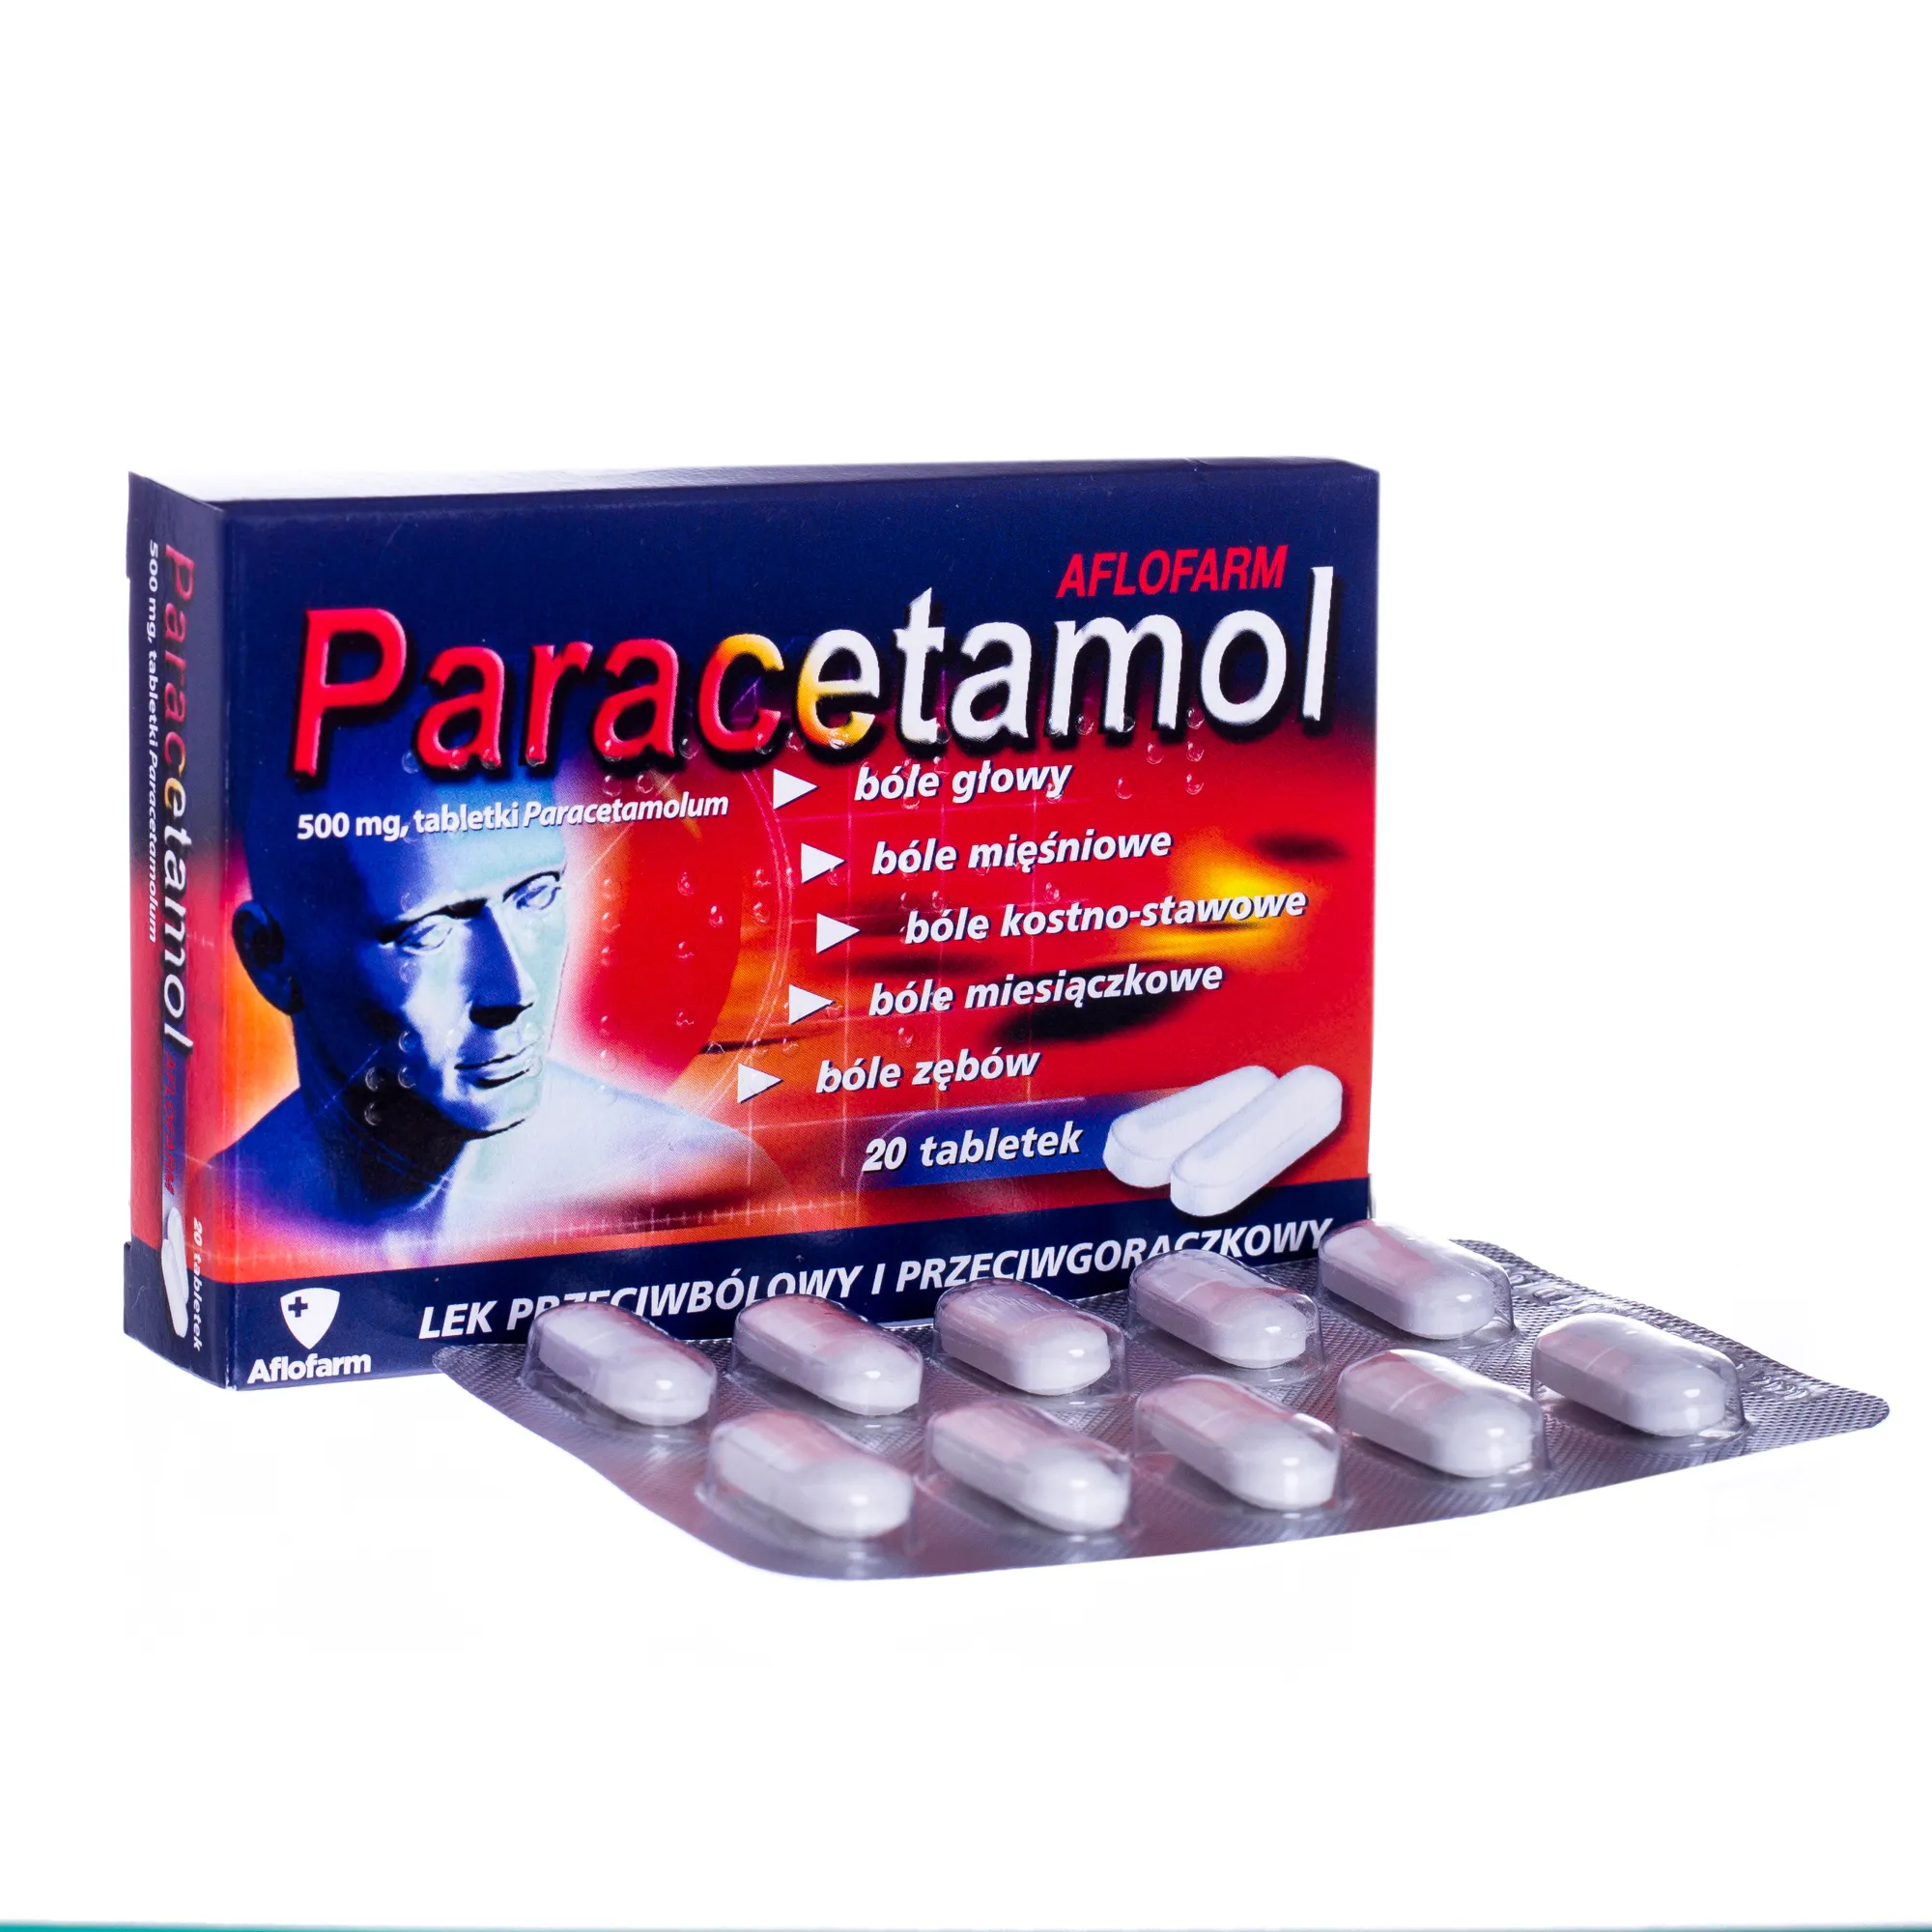 Paracetamol Aflofarm, 500 mg, lek przeciwbólowy i przeciwgorączkowy, 20 tabletek